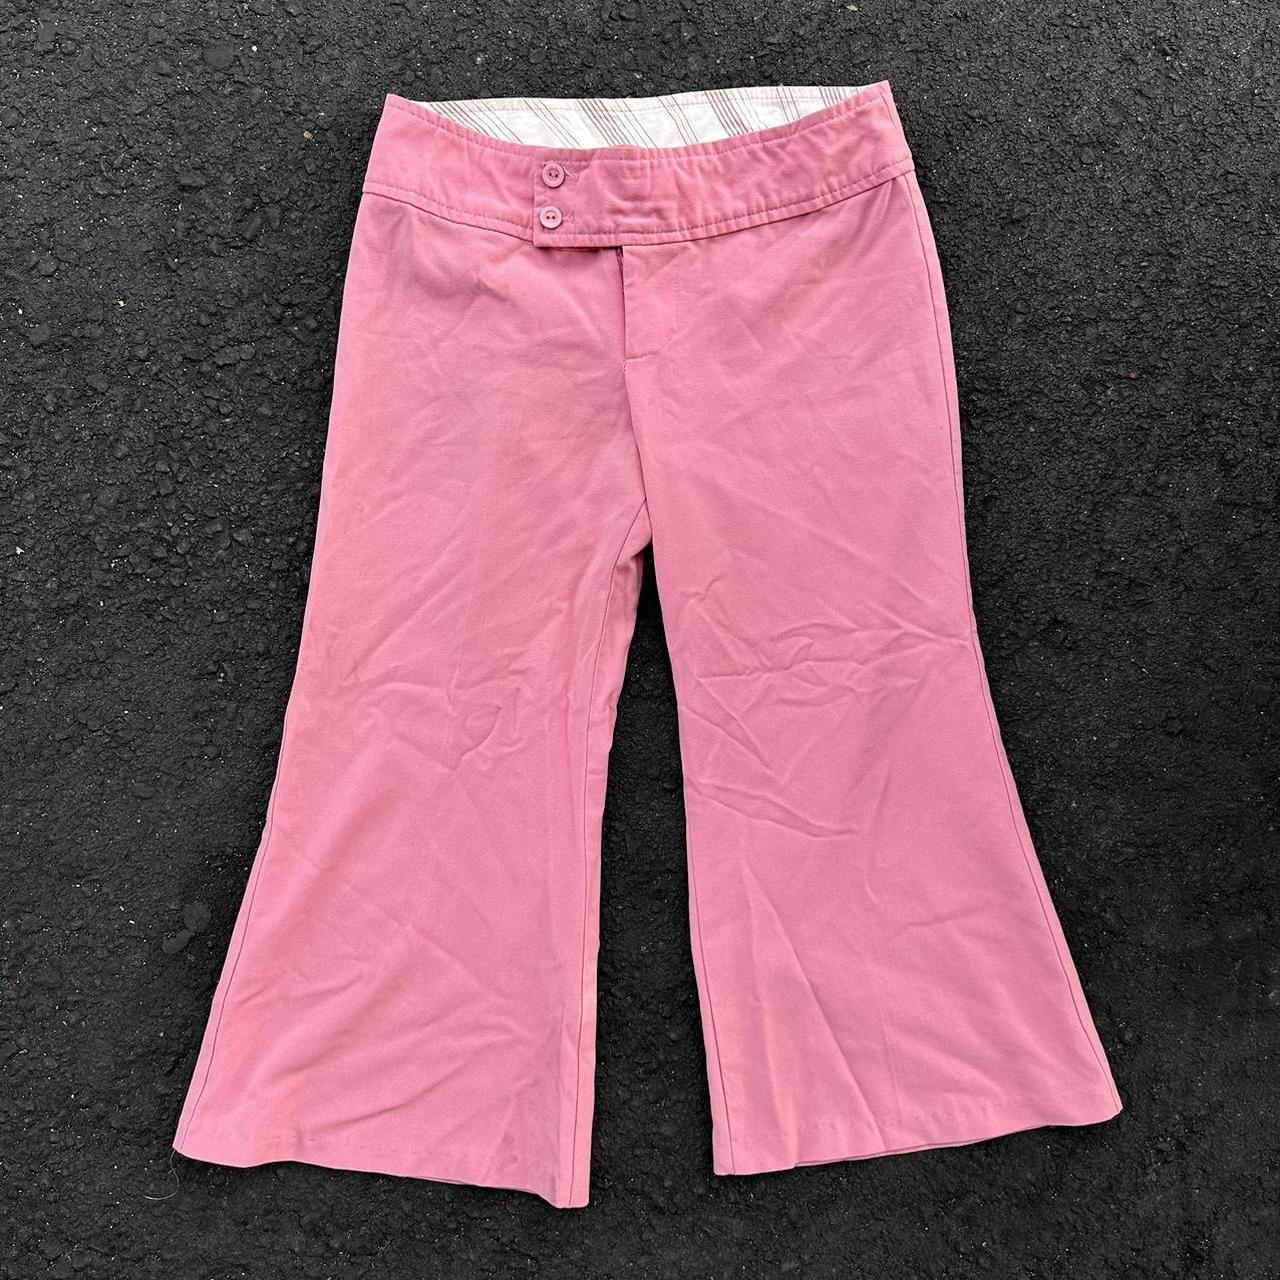 Poetry Clothing y2k pink low rise flare capri pants... - Depop